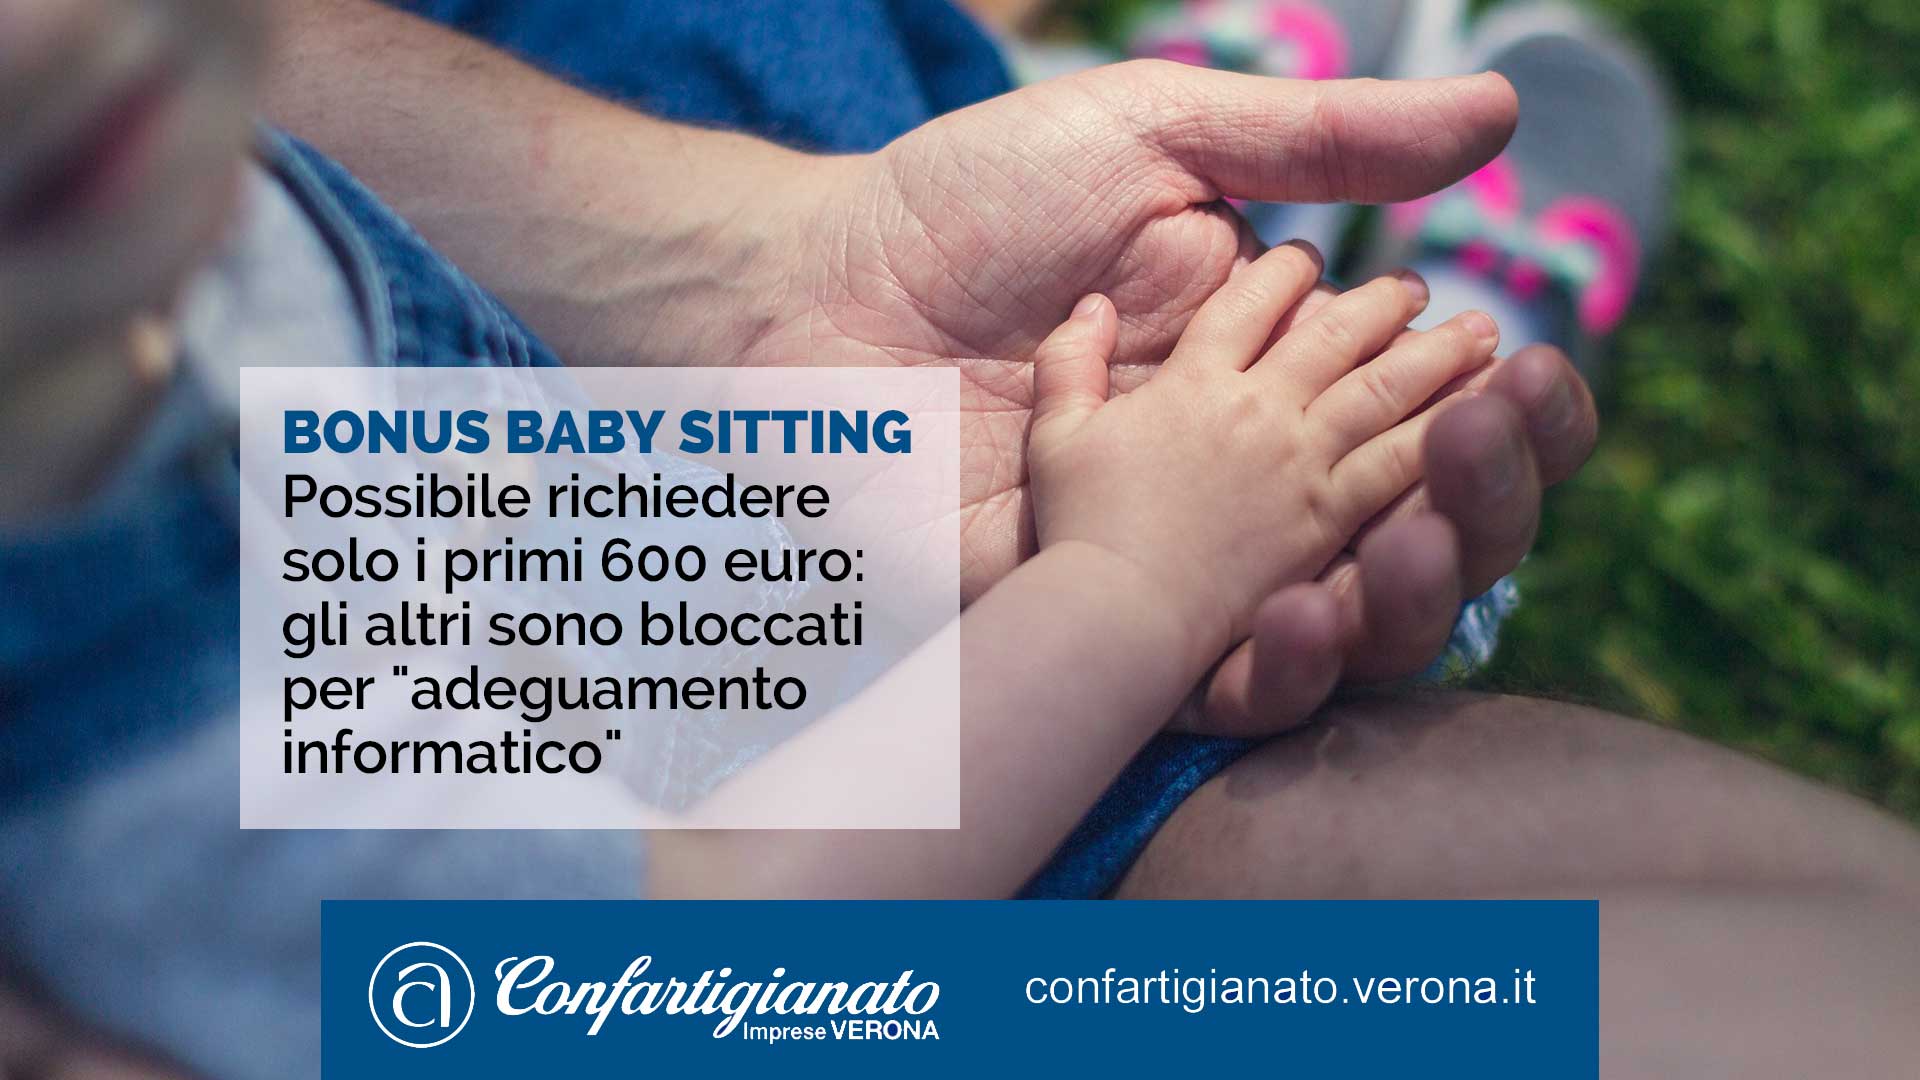 BONUS BABY SITTING – Possibile richiedere solo i primi 600 euro: gli altri sono bloccati per "adeguamento informatico"